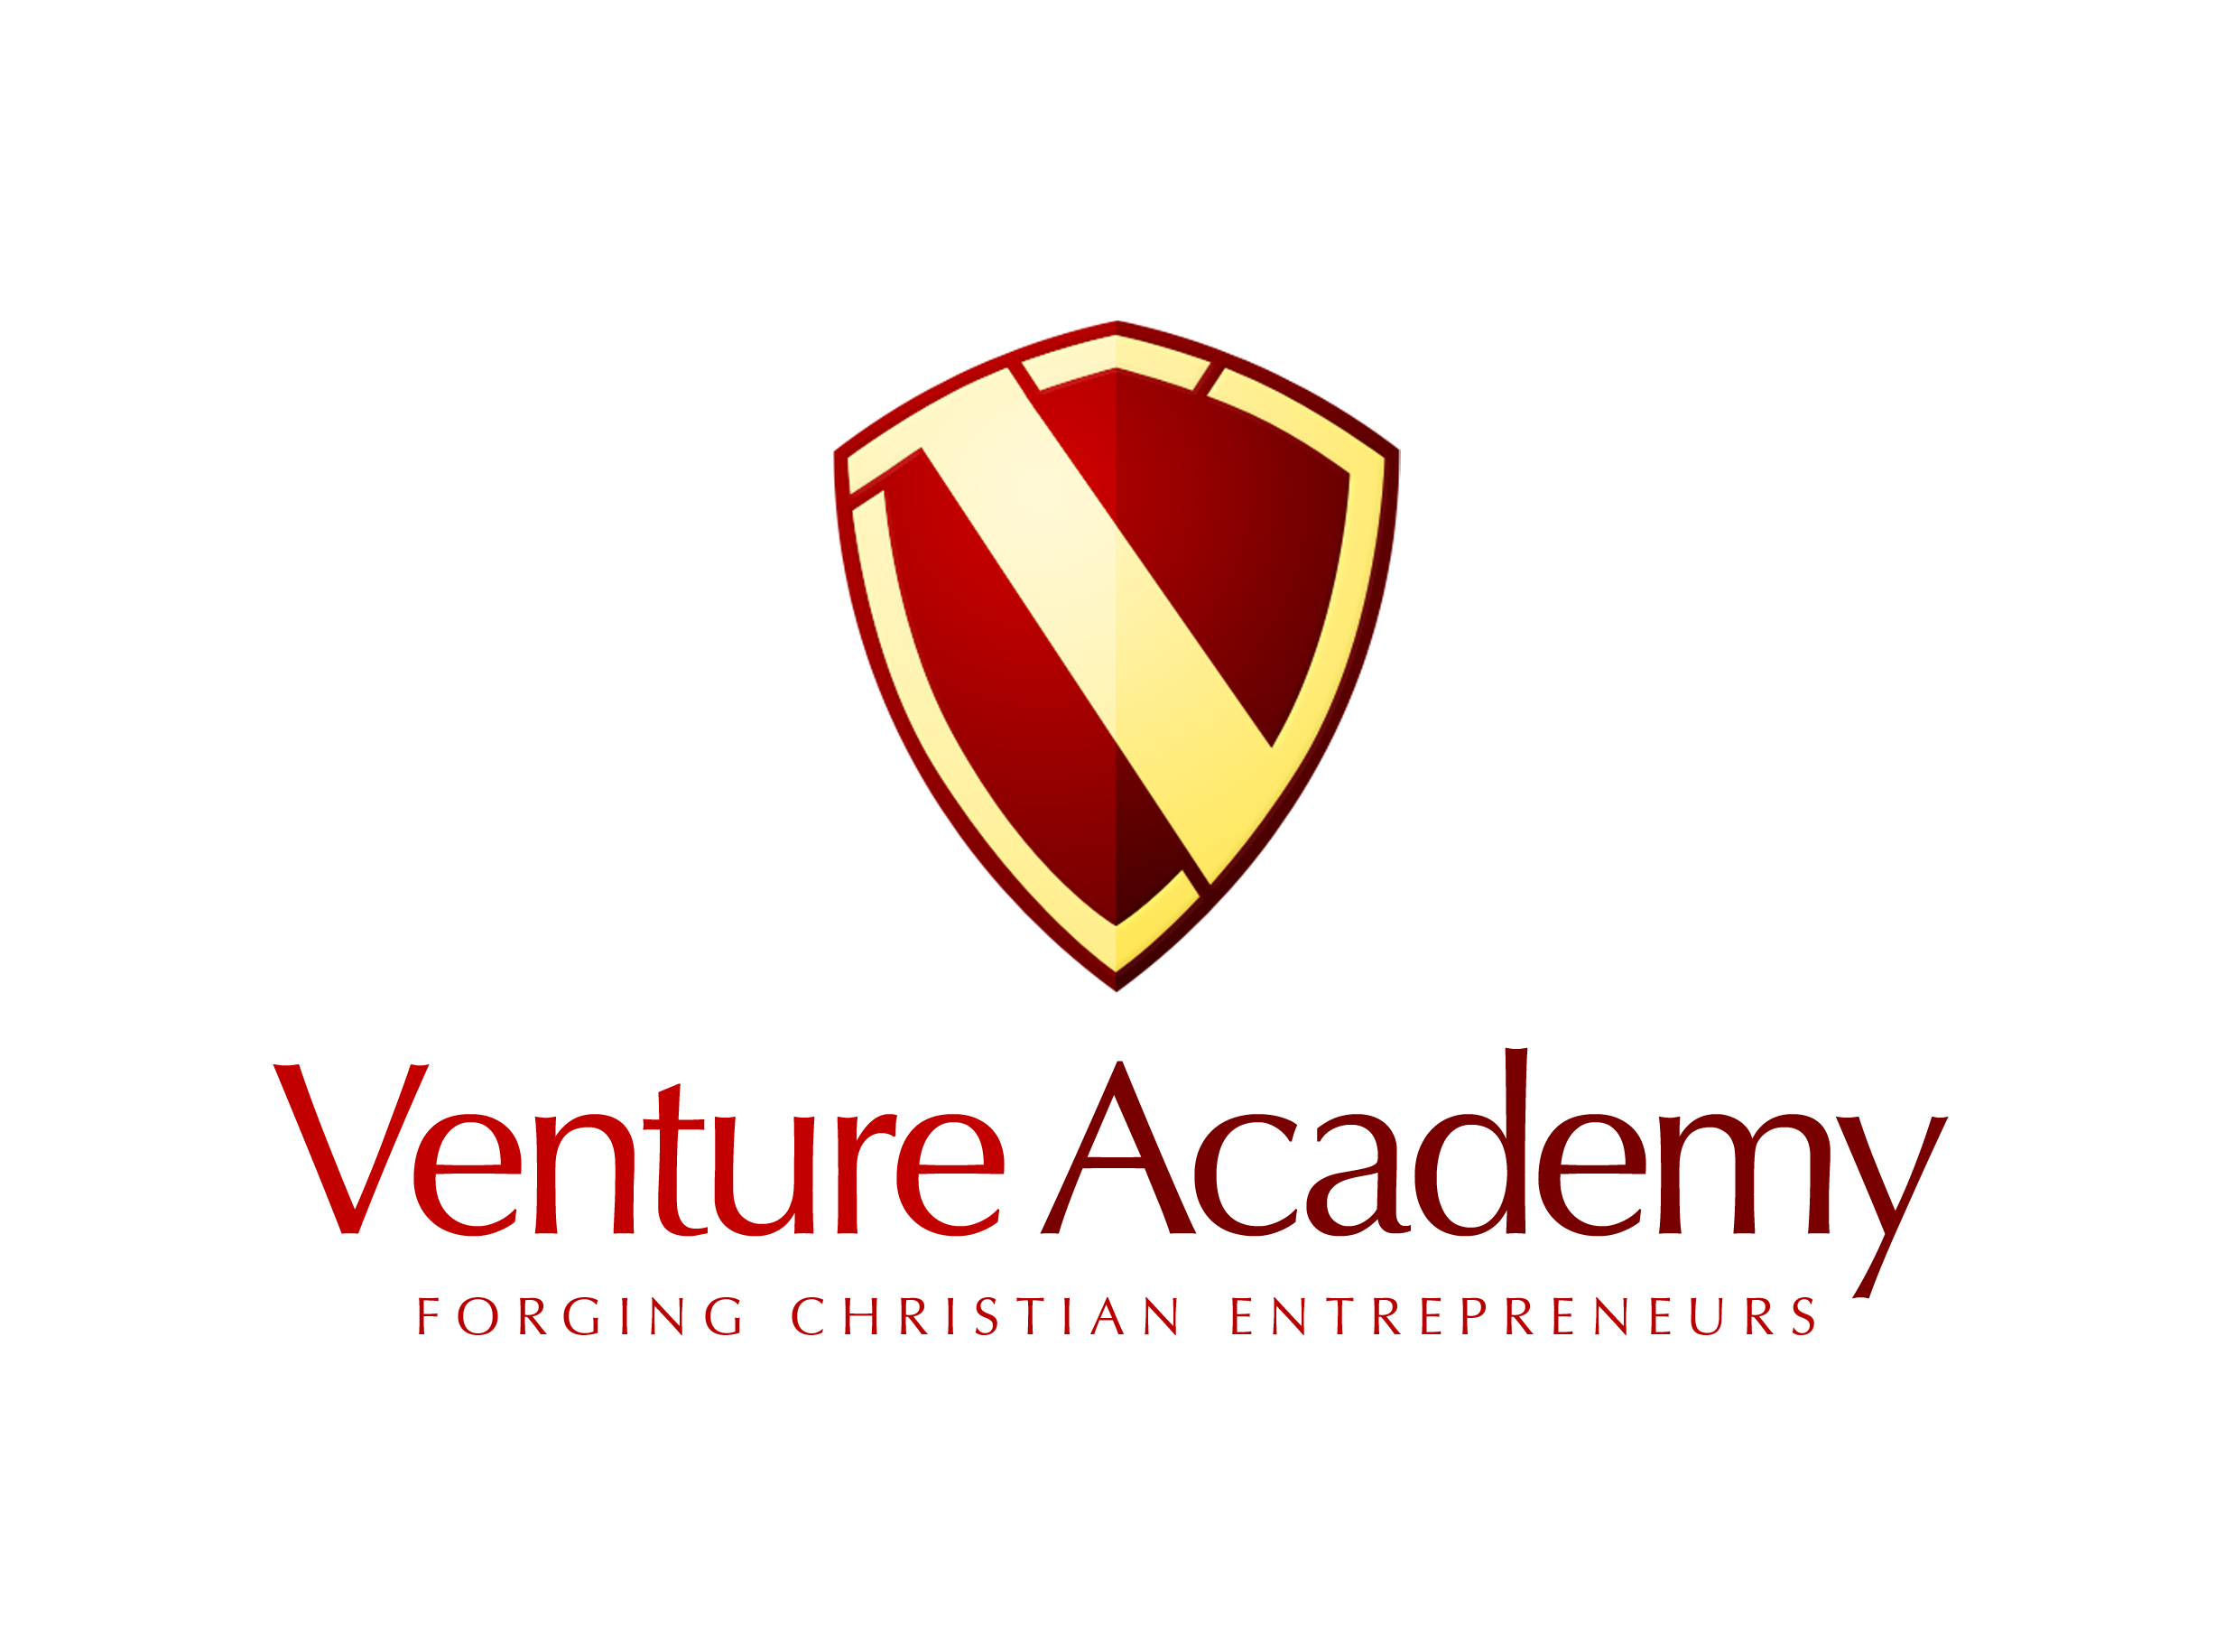 venture academy stockton